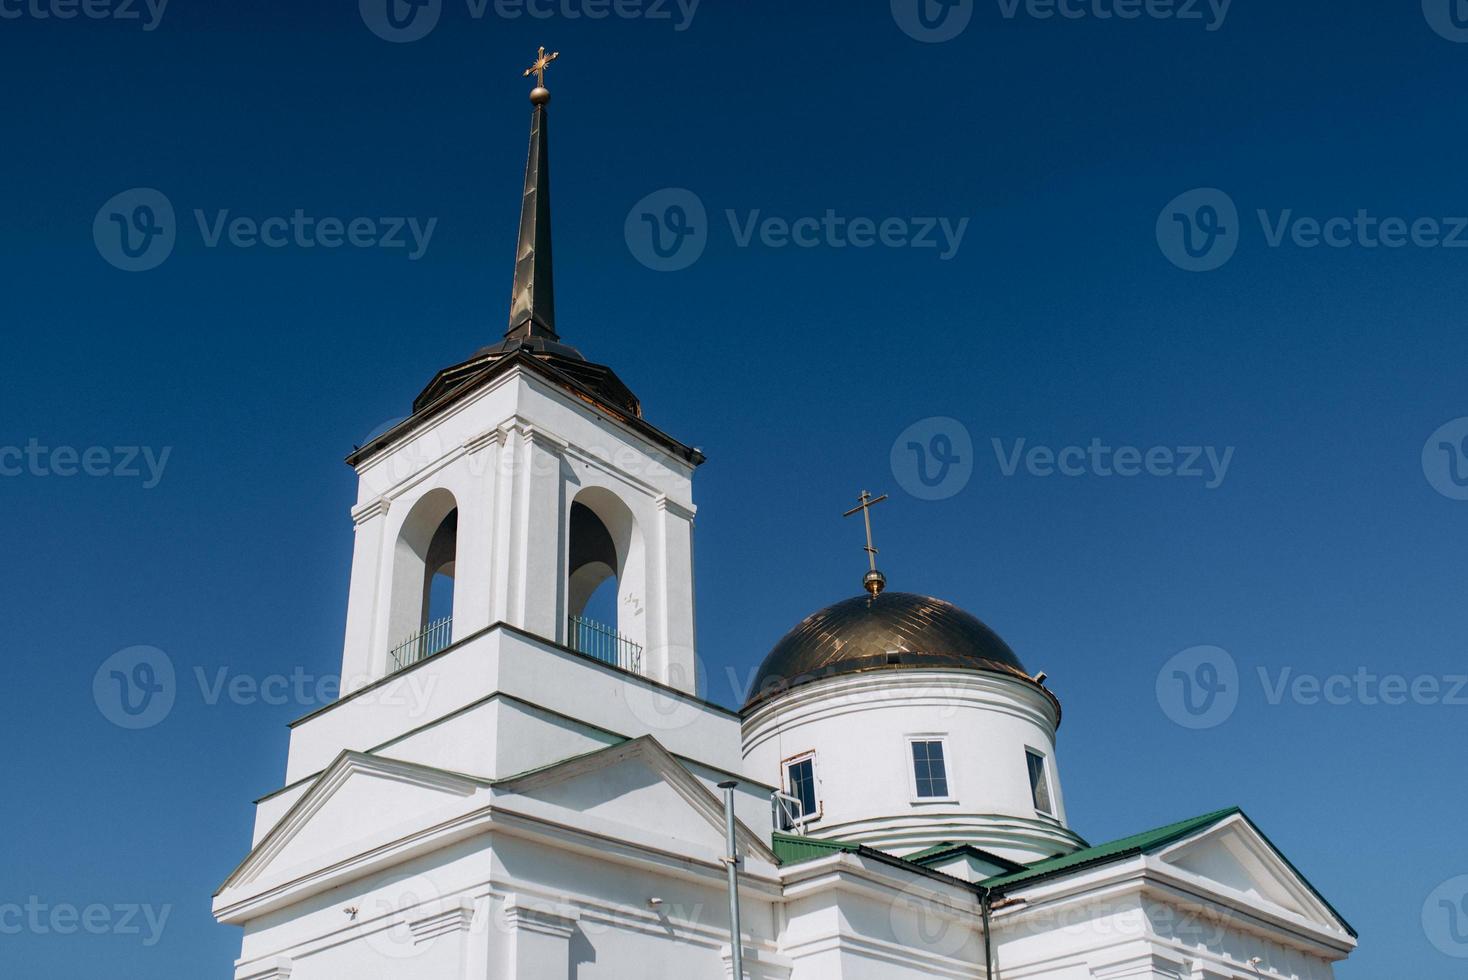 kathedraal van de orthodoxe kerk met iconen en altaar foto